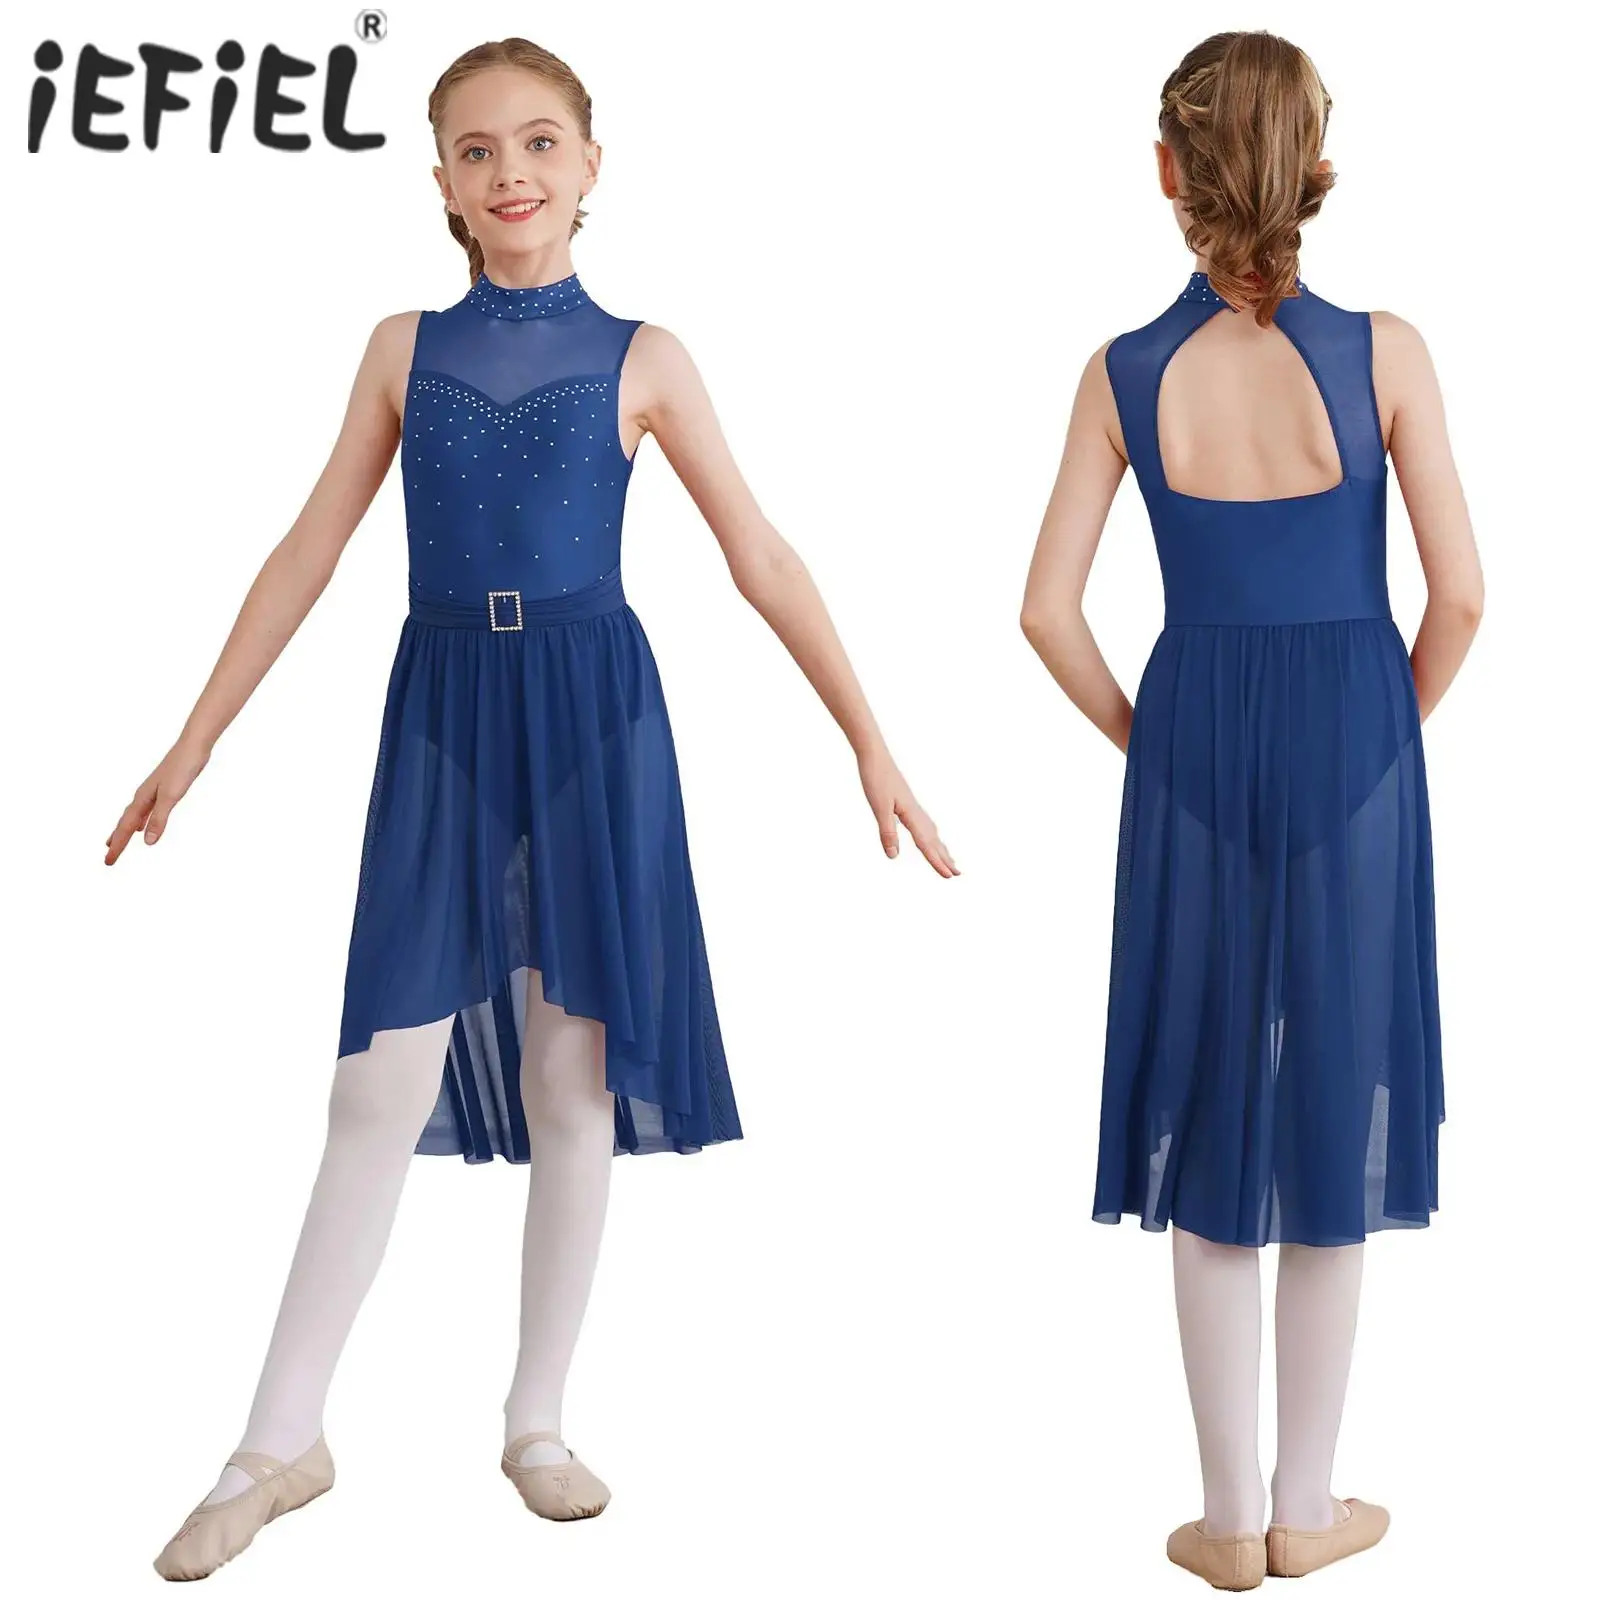 

Детское балетное танцевальное платье для девочек, без рукавов, с вырезами на спине, женское гимнастическое трико, лирическое платье, одежда для сценического катания на коньках